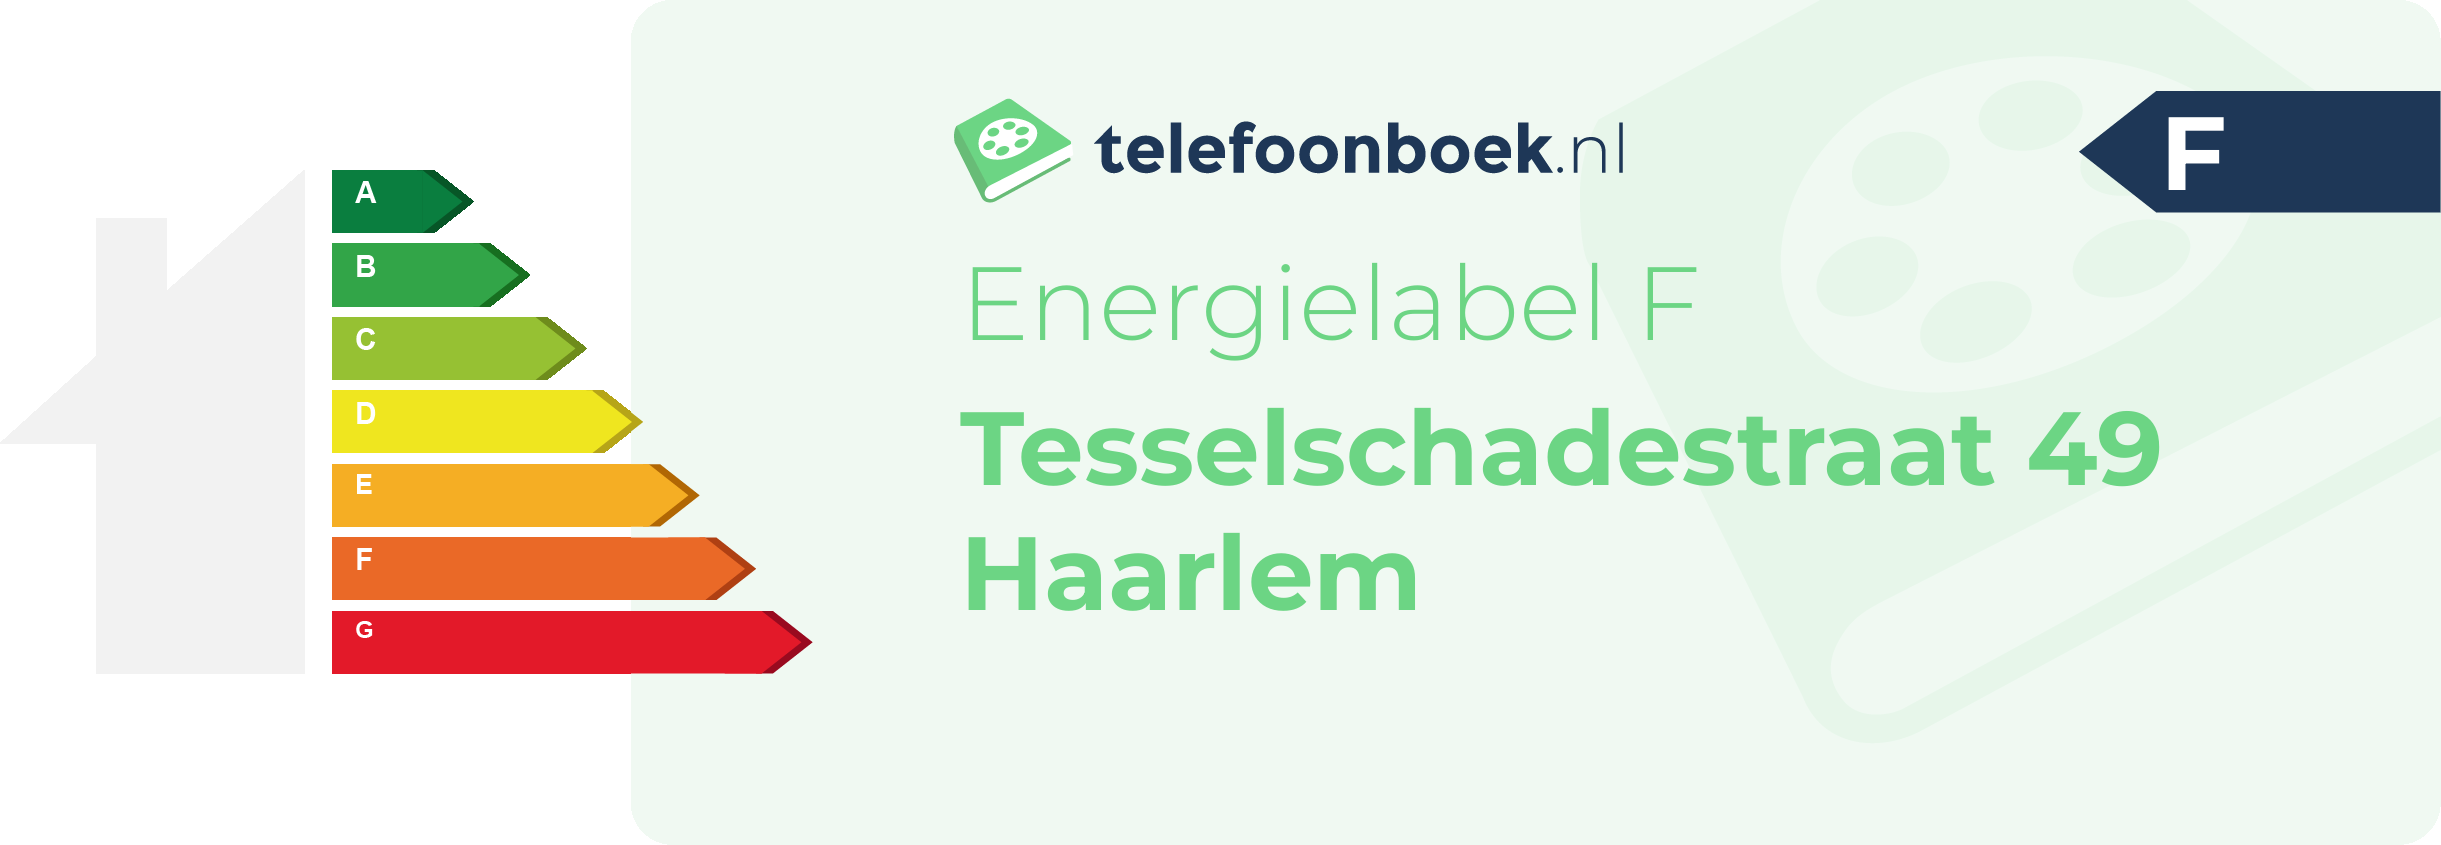 Energielabel Tesselschadestraat 49 Haarlem